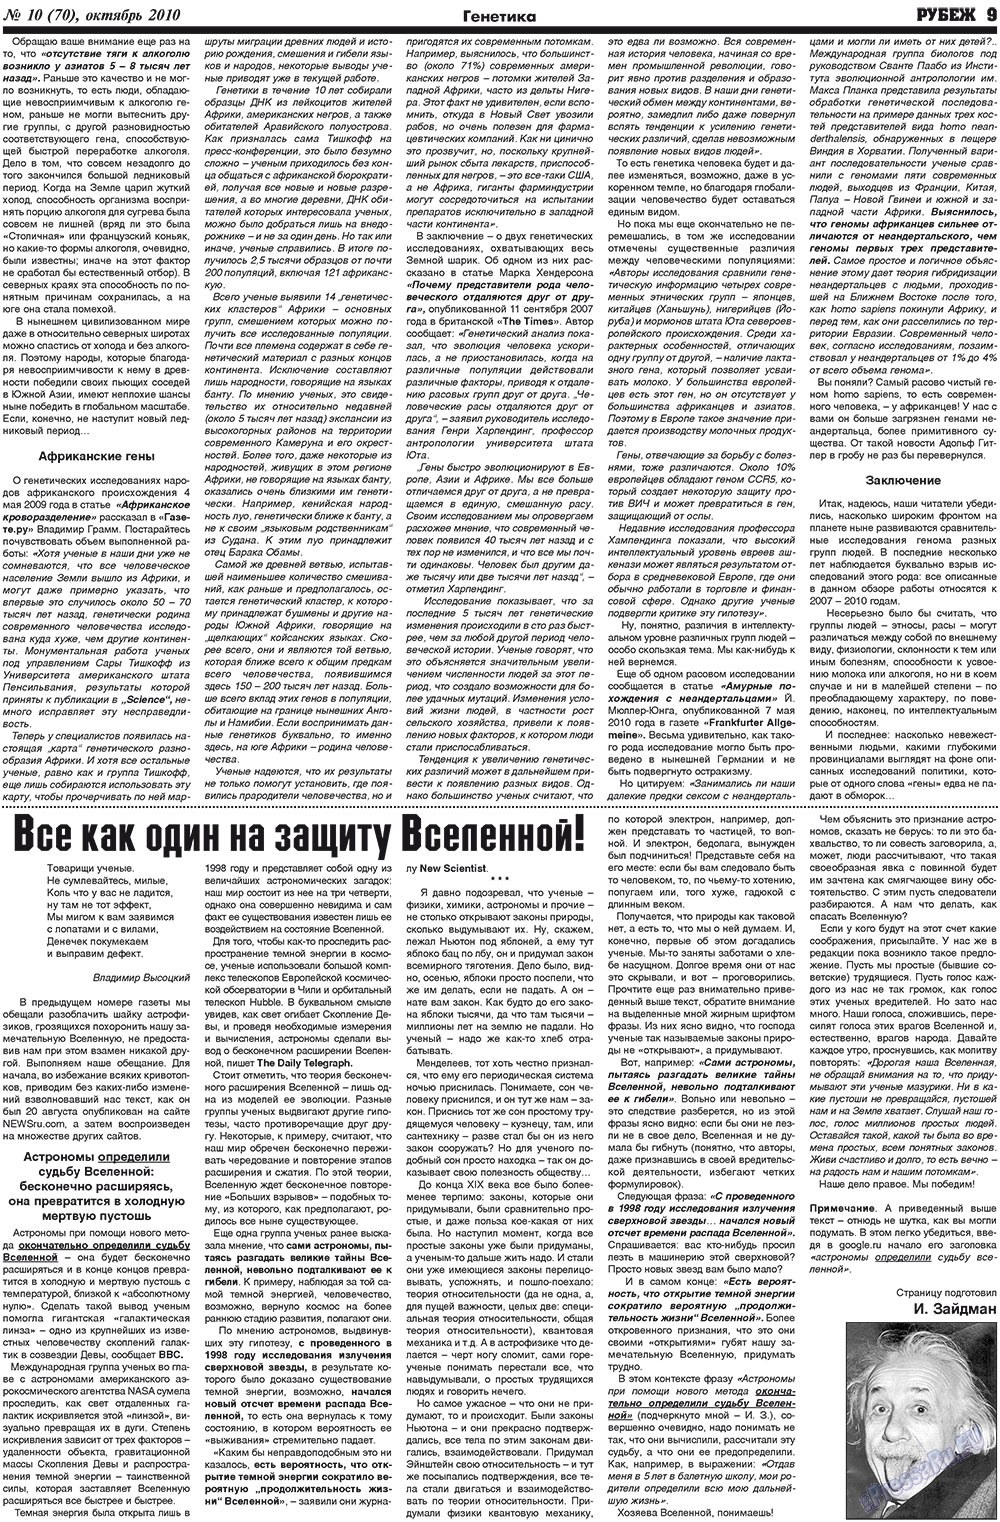 Рубеж (газета). 2010 год, номер 10, стр. 9